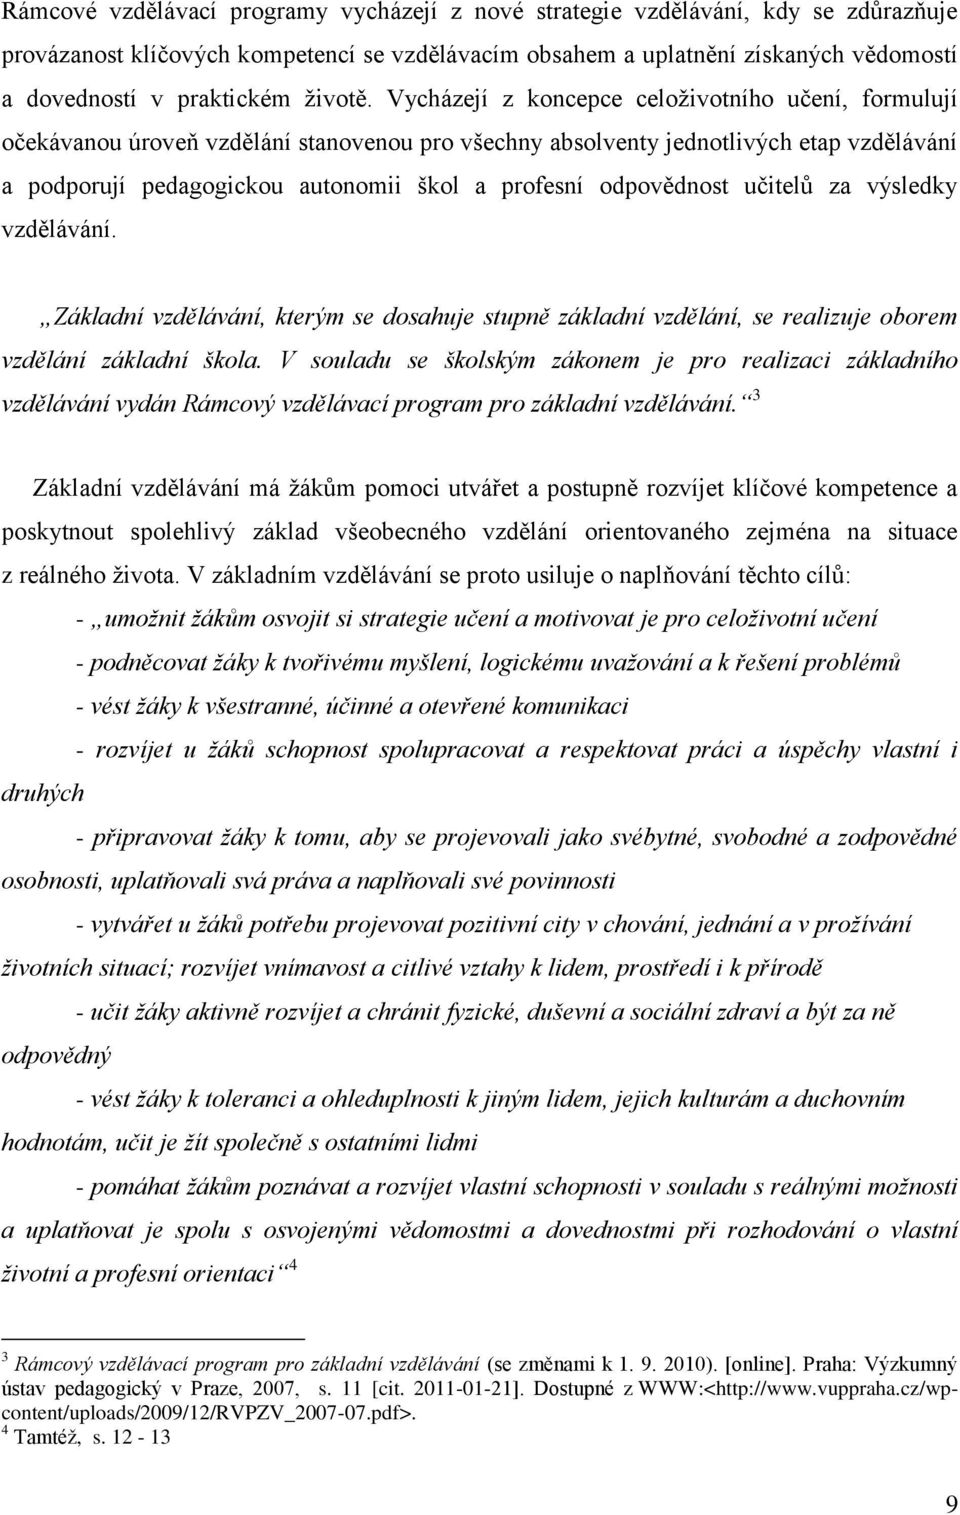 UNIVERZITA PALACKÉHO V OLOMOUCI. Diplomová práce - PDF Stažení zdarma